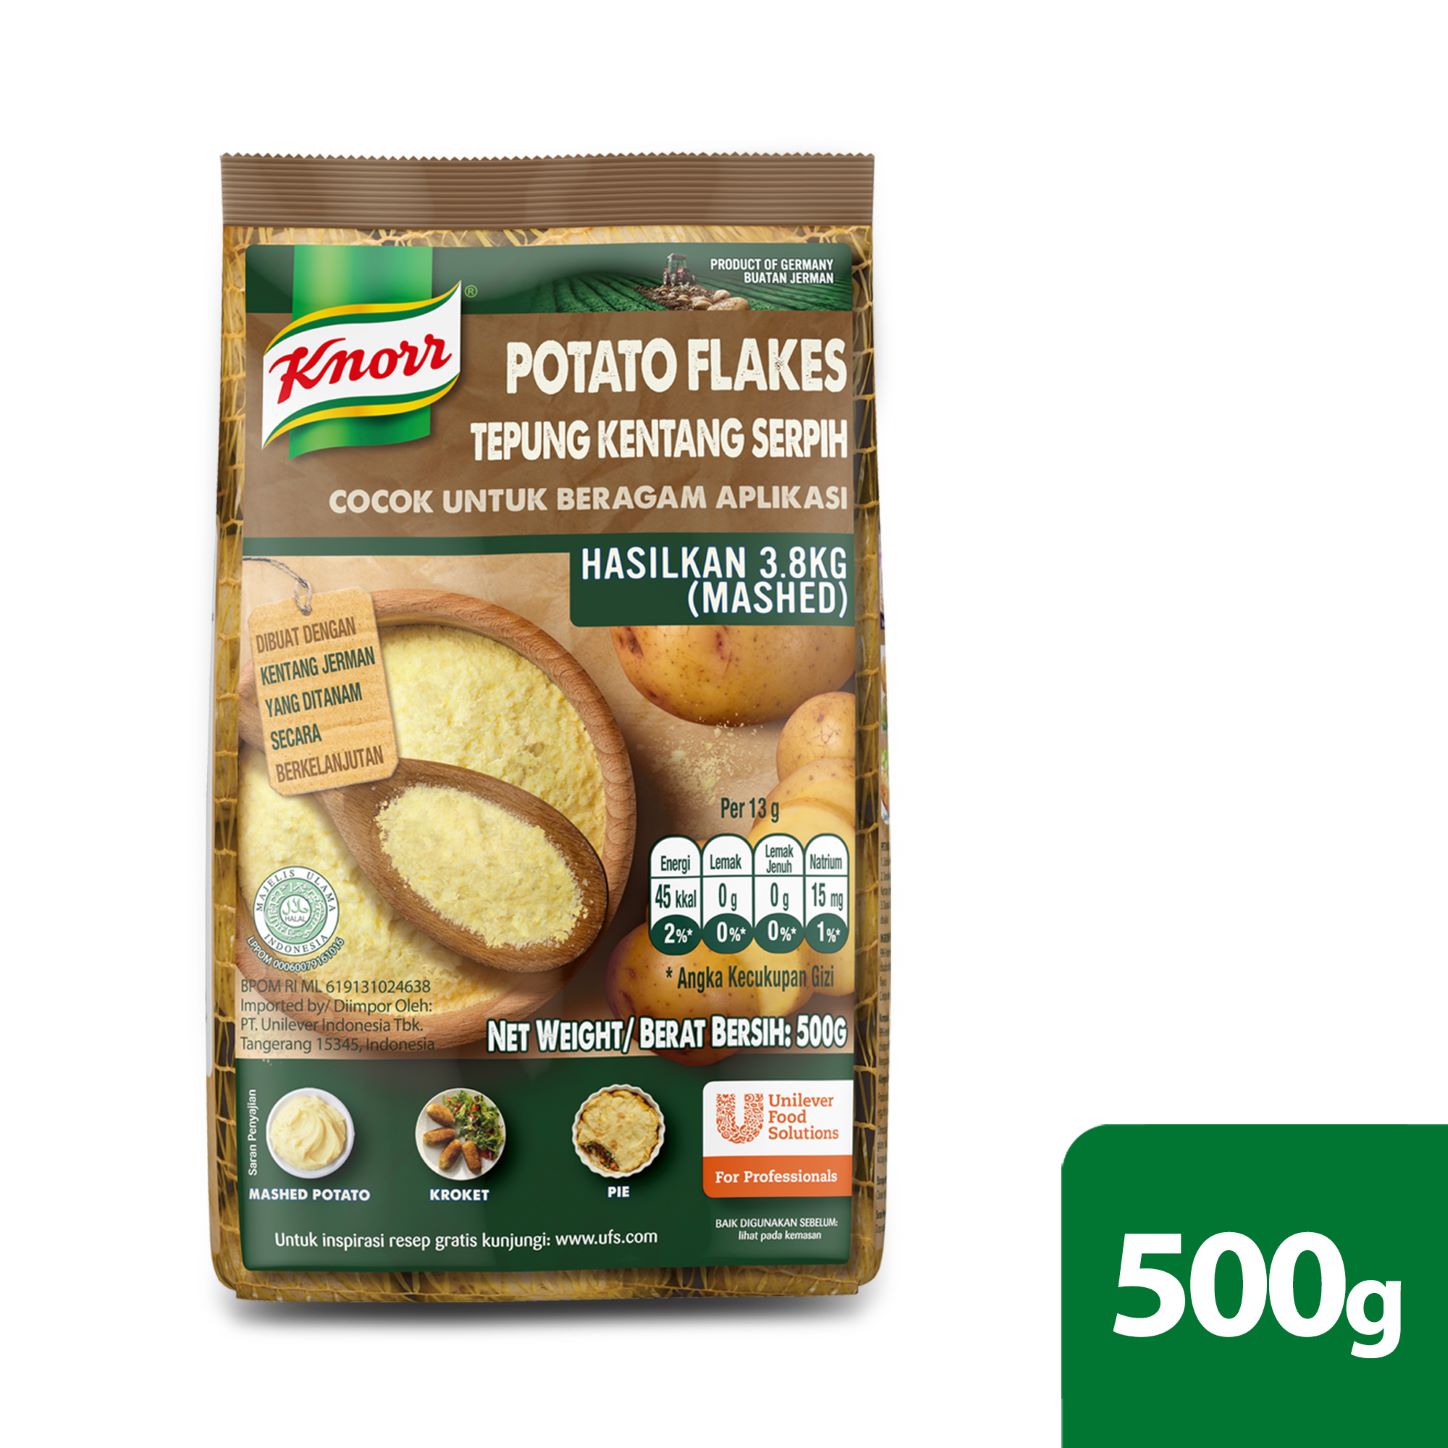 Knorr Potato Flakes 500g - Knorr Potato Flakes memberi Anda kentang berkualitas hanya sekali kupas, untuk membuat 3.75kg kentang tumbuk.